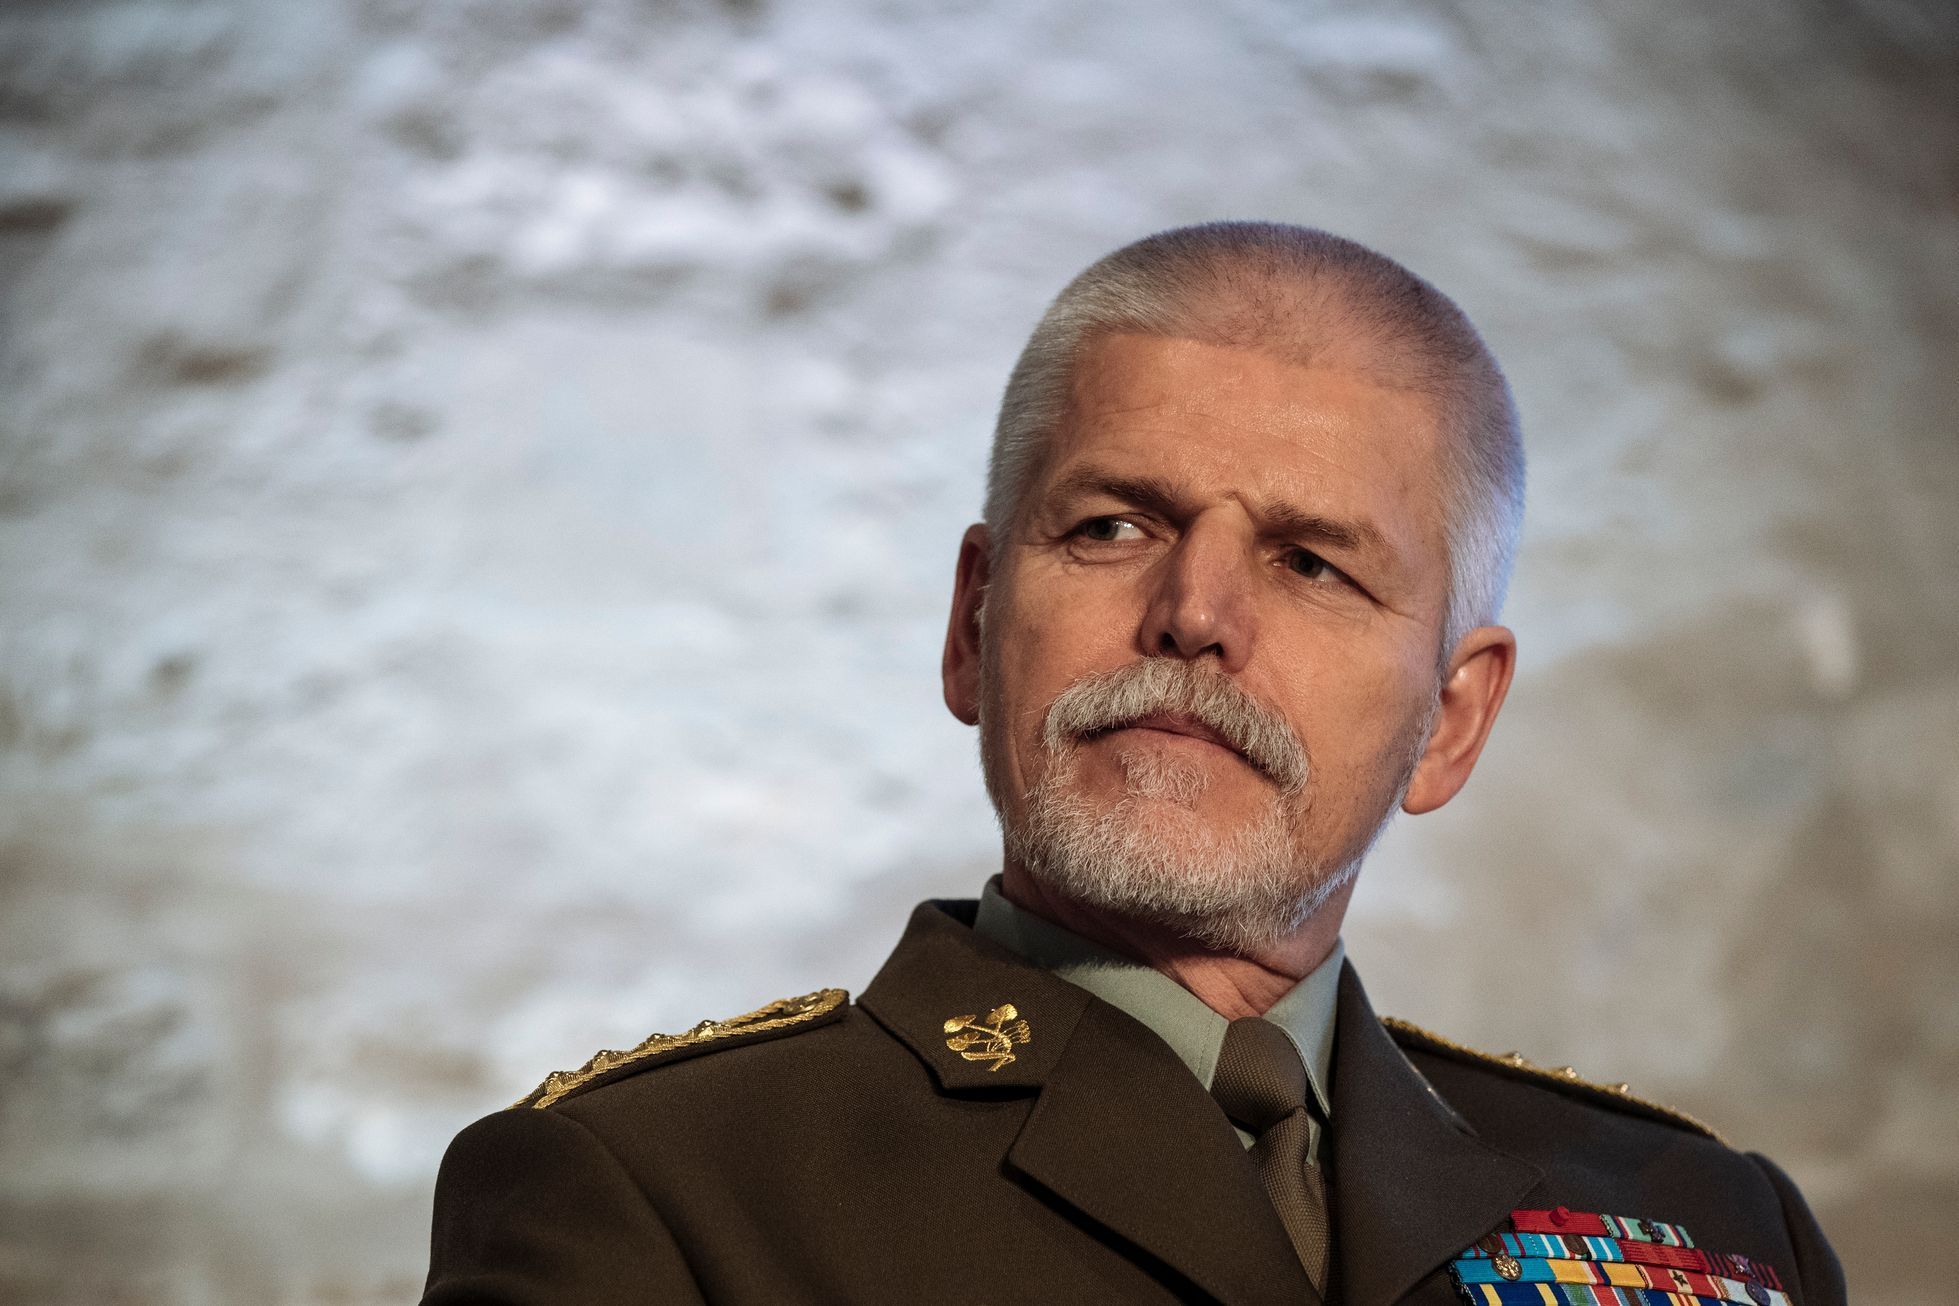 Generál Petr Pavel, Praha, 29.11.2017